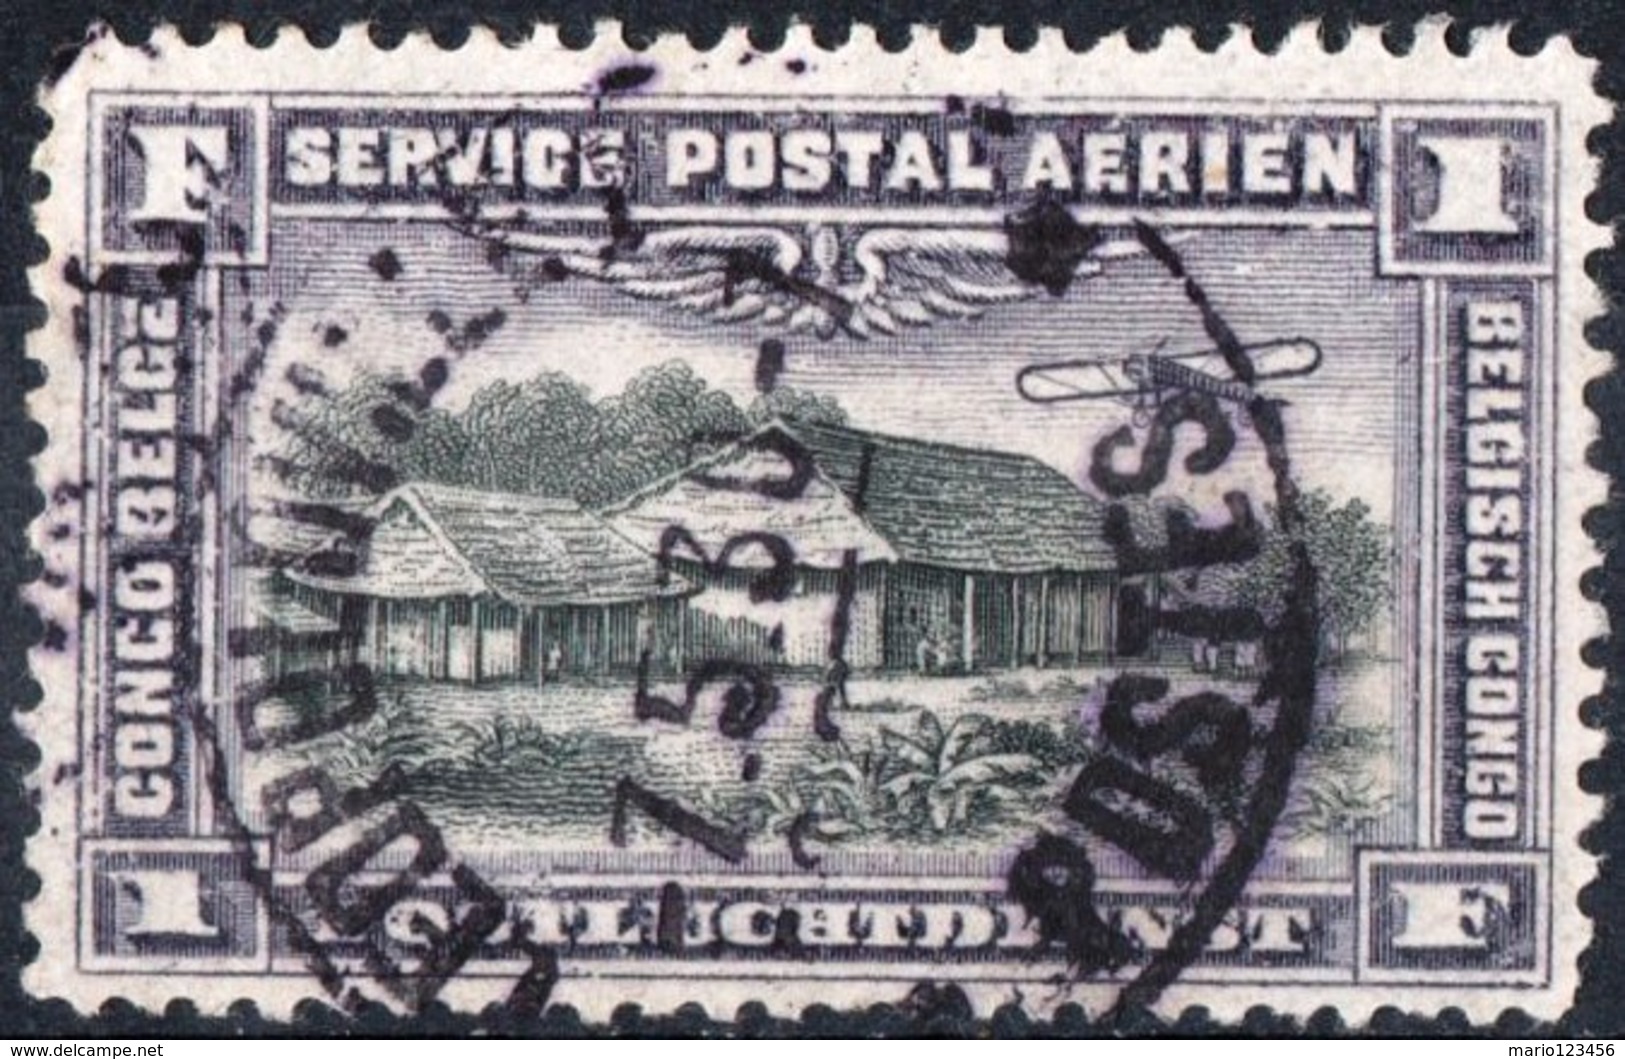 CONGO BELGA, BELGIAN CONGO, COLONIA BELGA, POSTA AEREA, AIRMAIL, 1934,  USATO Michel 43   Scott C2 - Usati